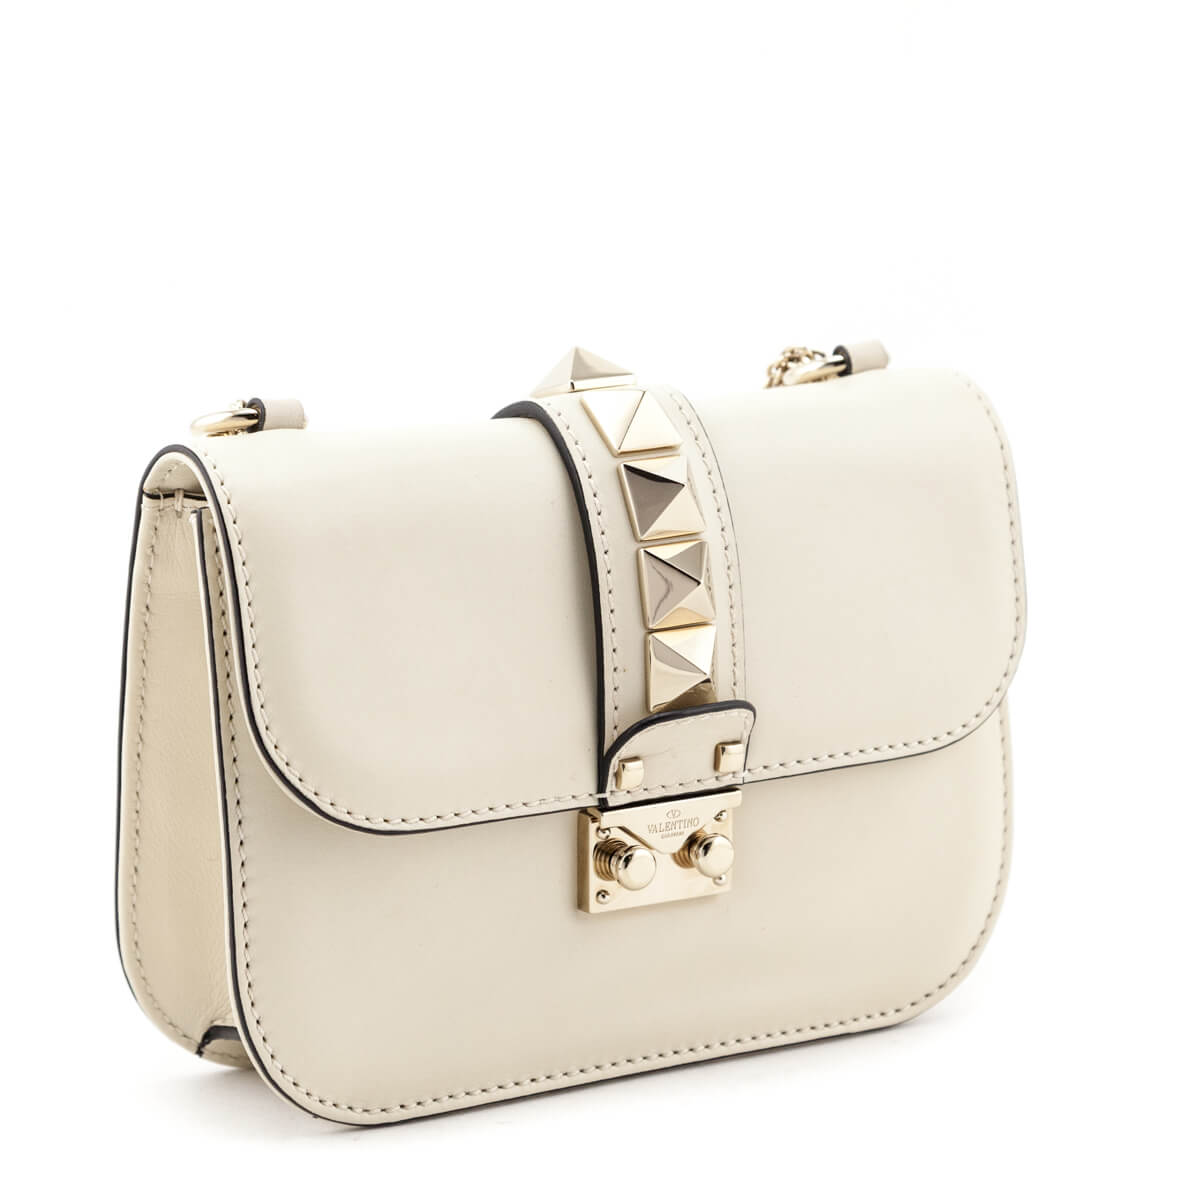 forever glam handbags online